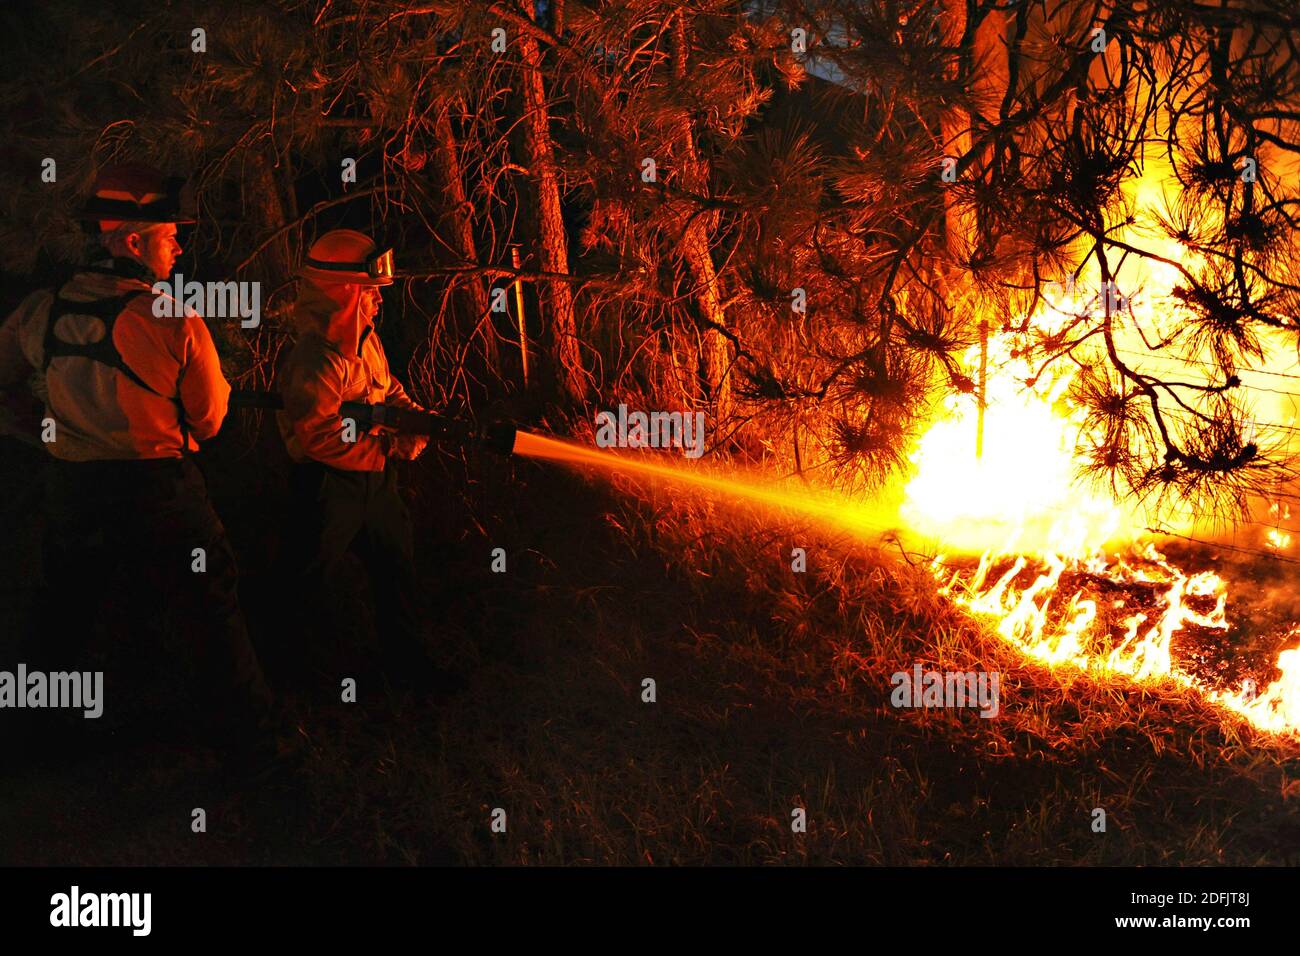 COLORADO, États-Unis - 12 juin 2013 - les pompiers de l'US Air Force Academy combattent un point d'accès dans le feu de forêt noire dans le Colorado, aux États-Unis. Un total de 16 personnes an Banque D'Images